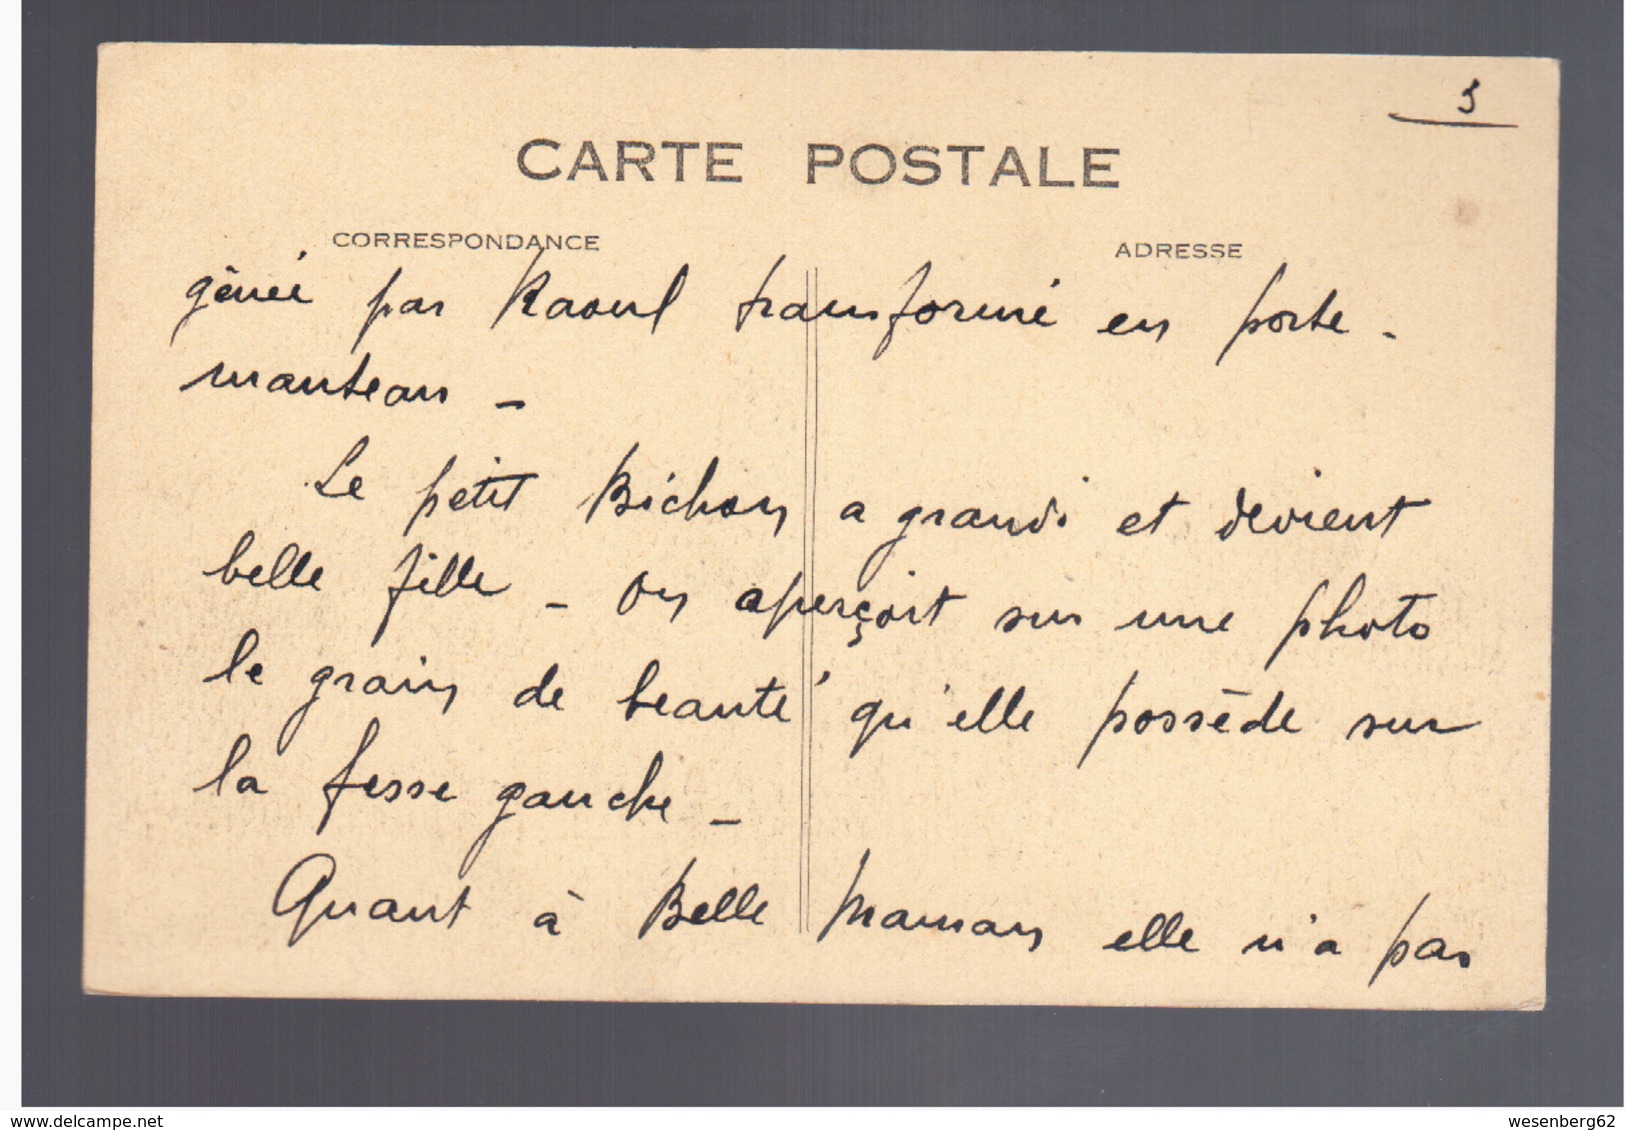 Congo Français Pointe Noire A E F "African- Bar" Ca 1920 Old Postcard - Pointe-Noire